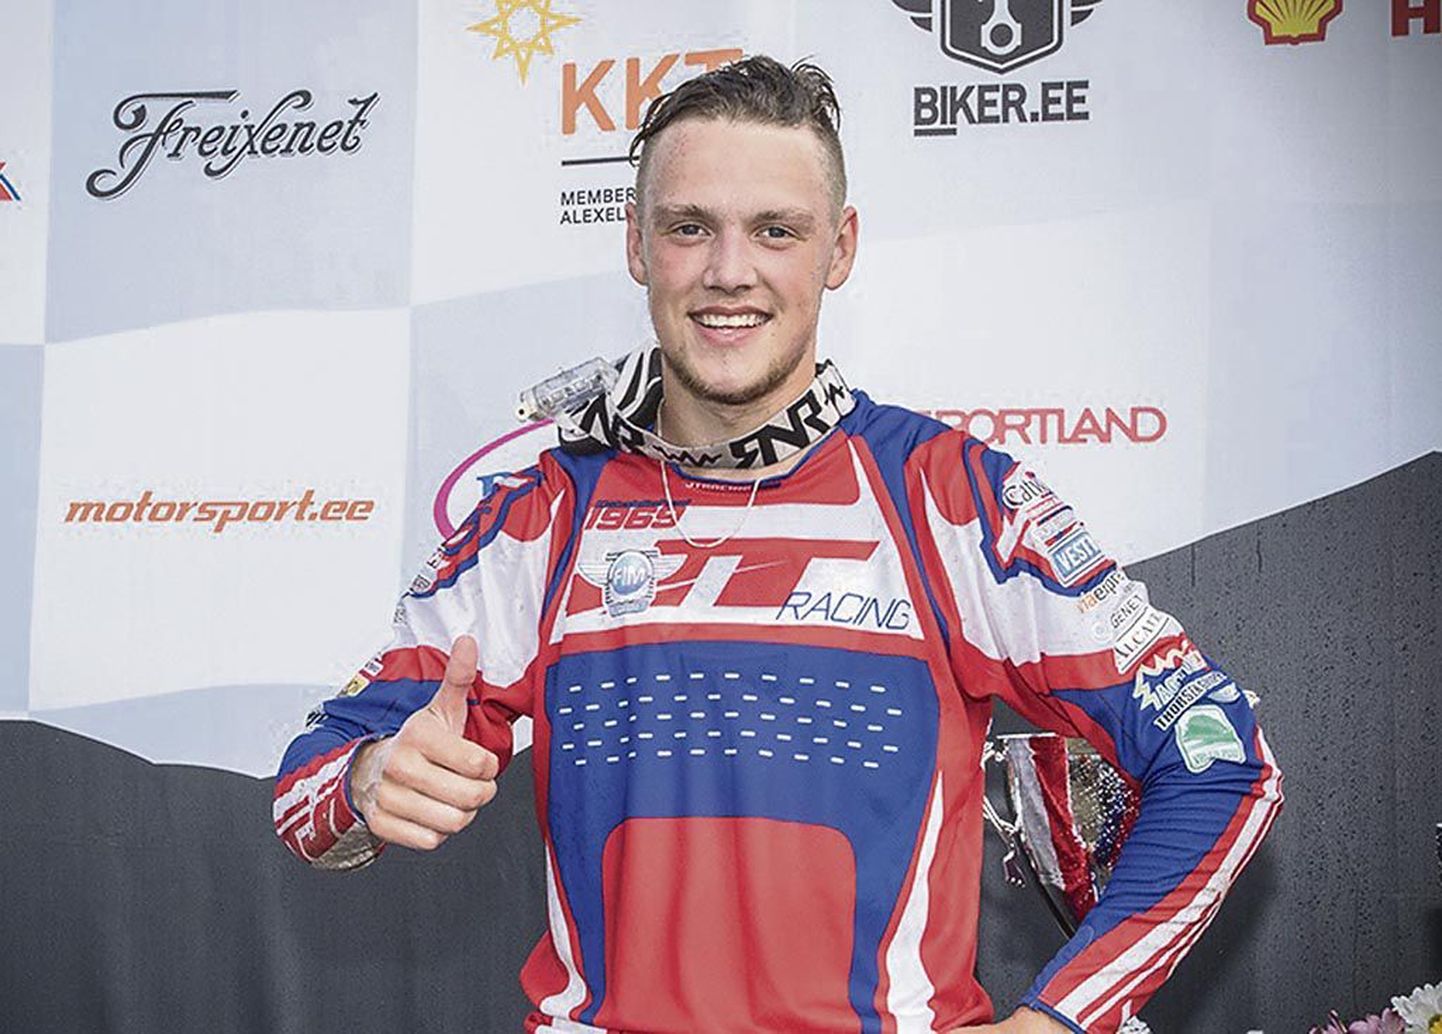 17aastane Kevin Saar võitis esimese eestlasena quadracer‘ite motokrossis Euroopa meistrikulla.